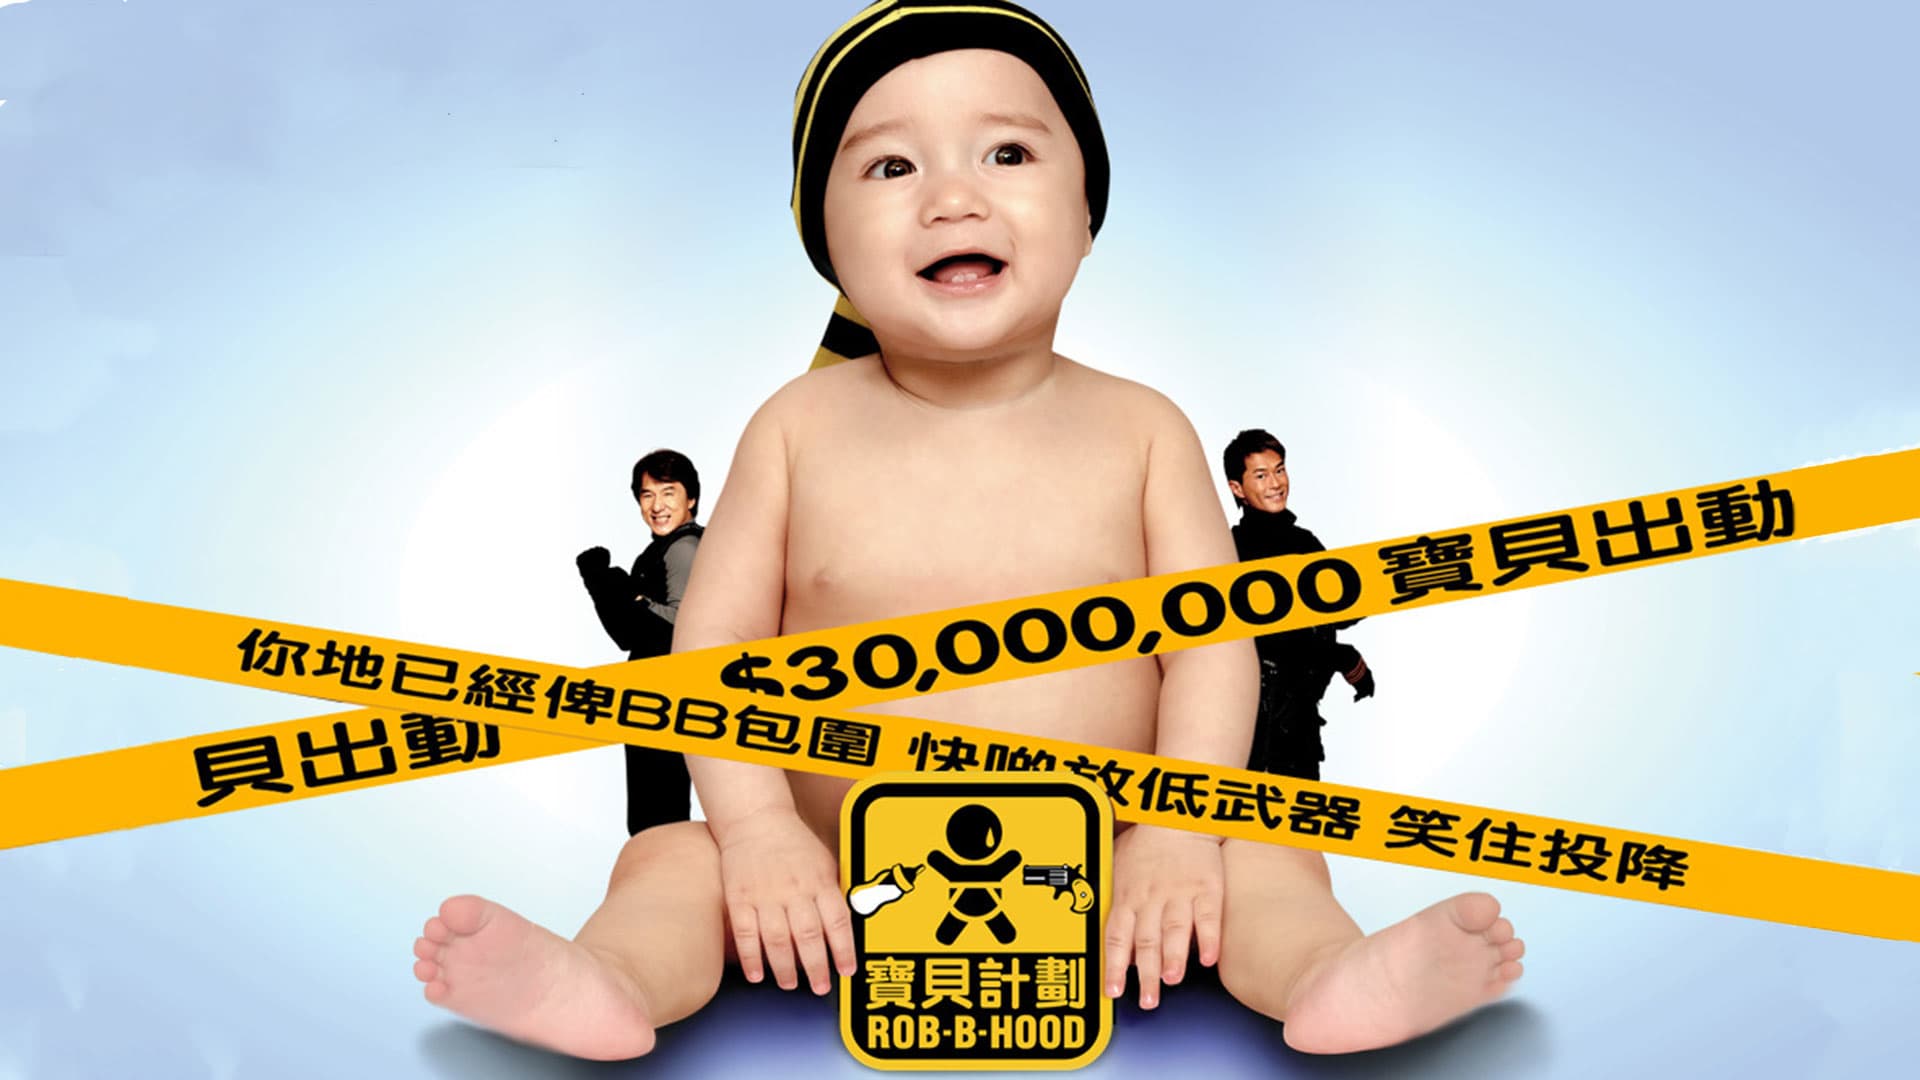 Младенец на $30 000 000